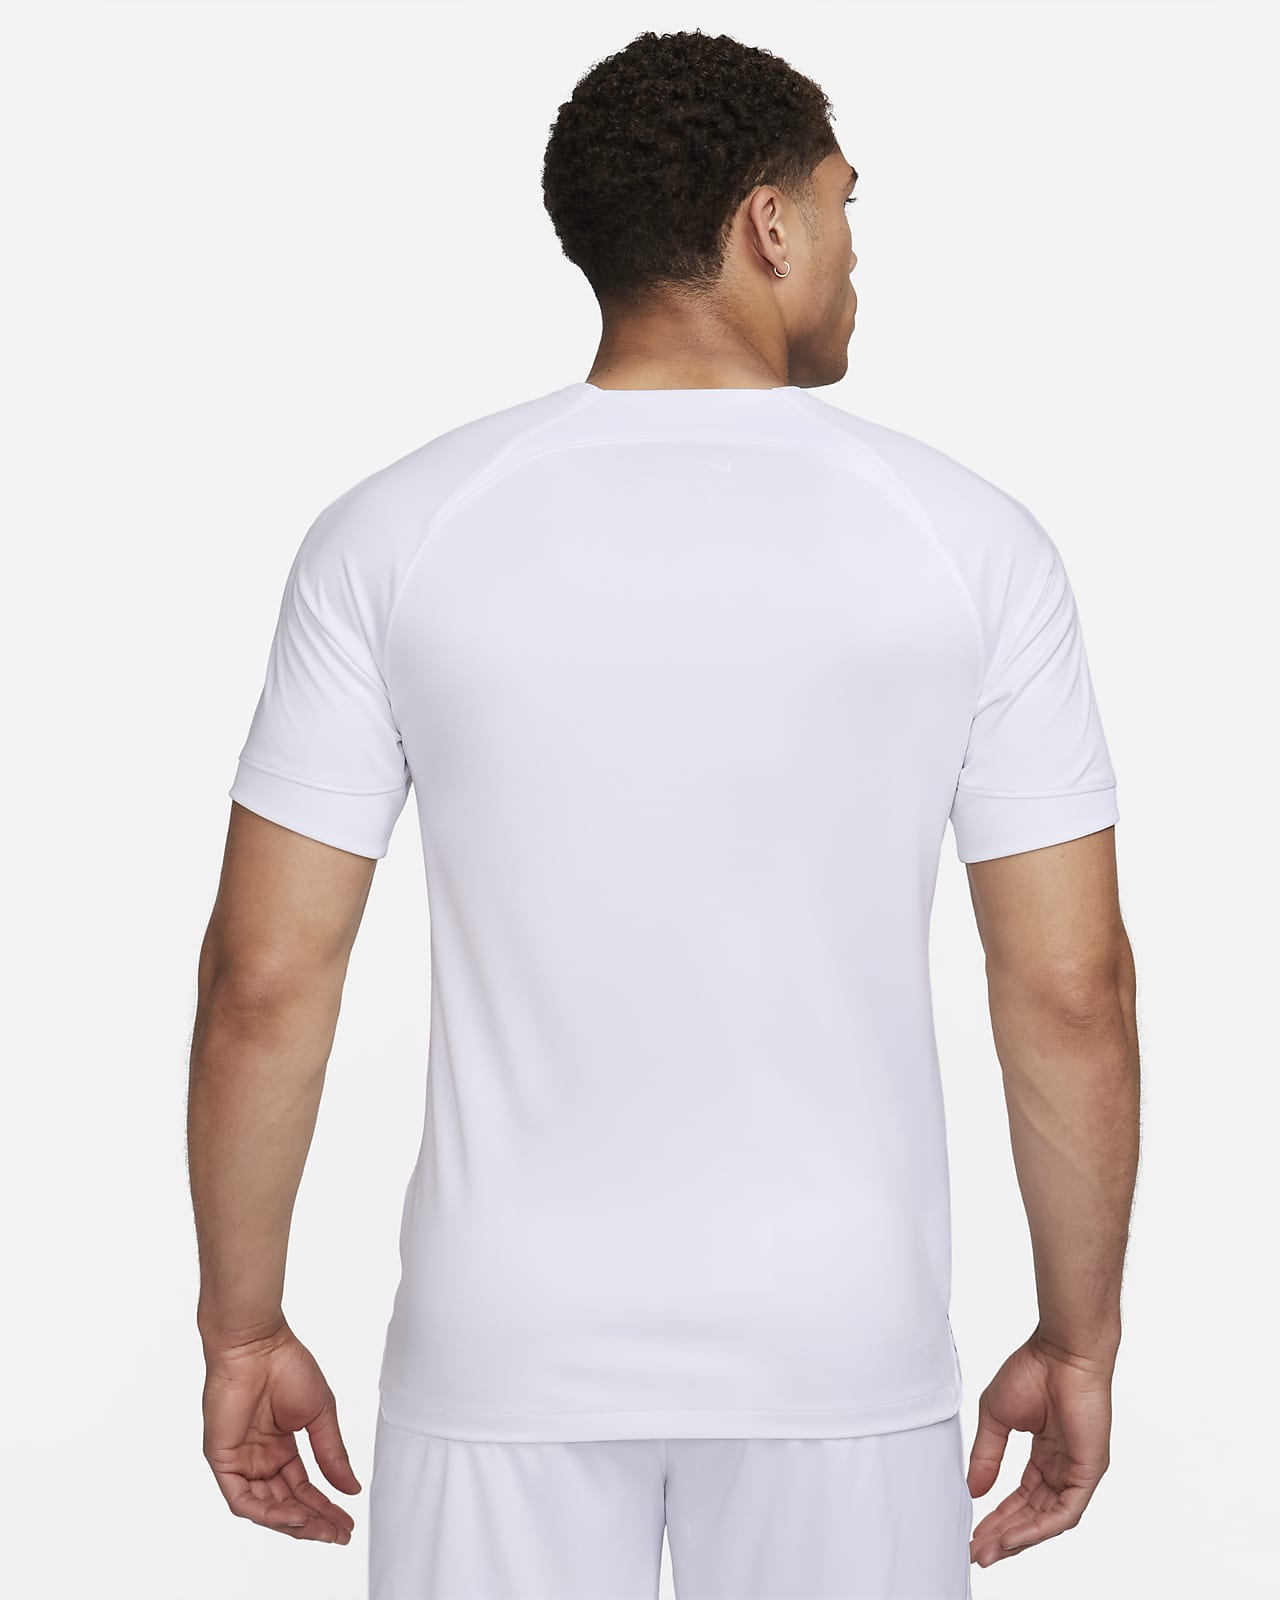 inter milan white shirt